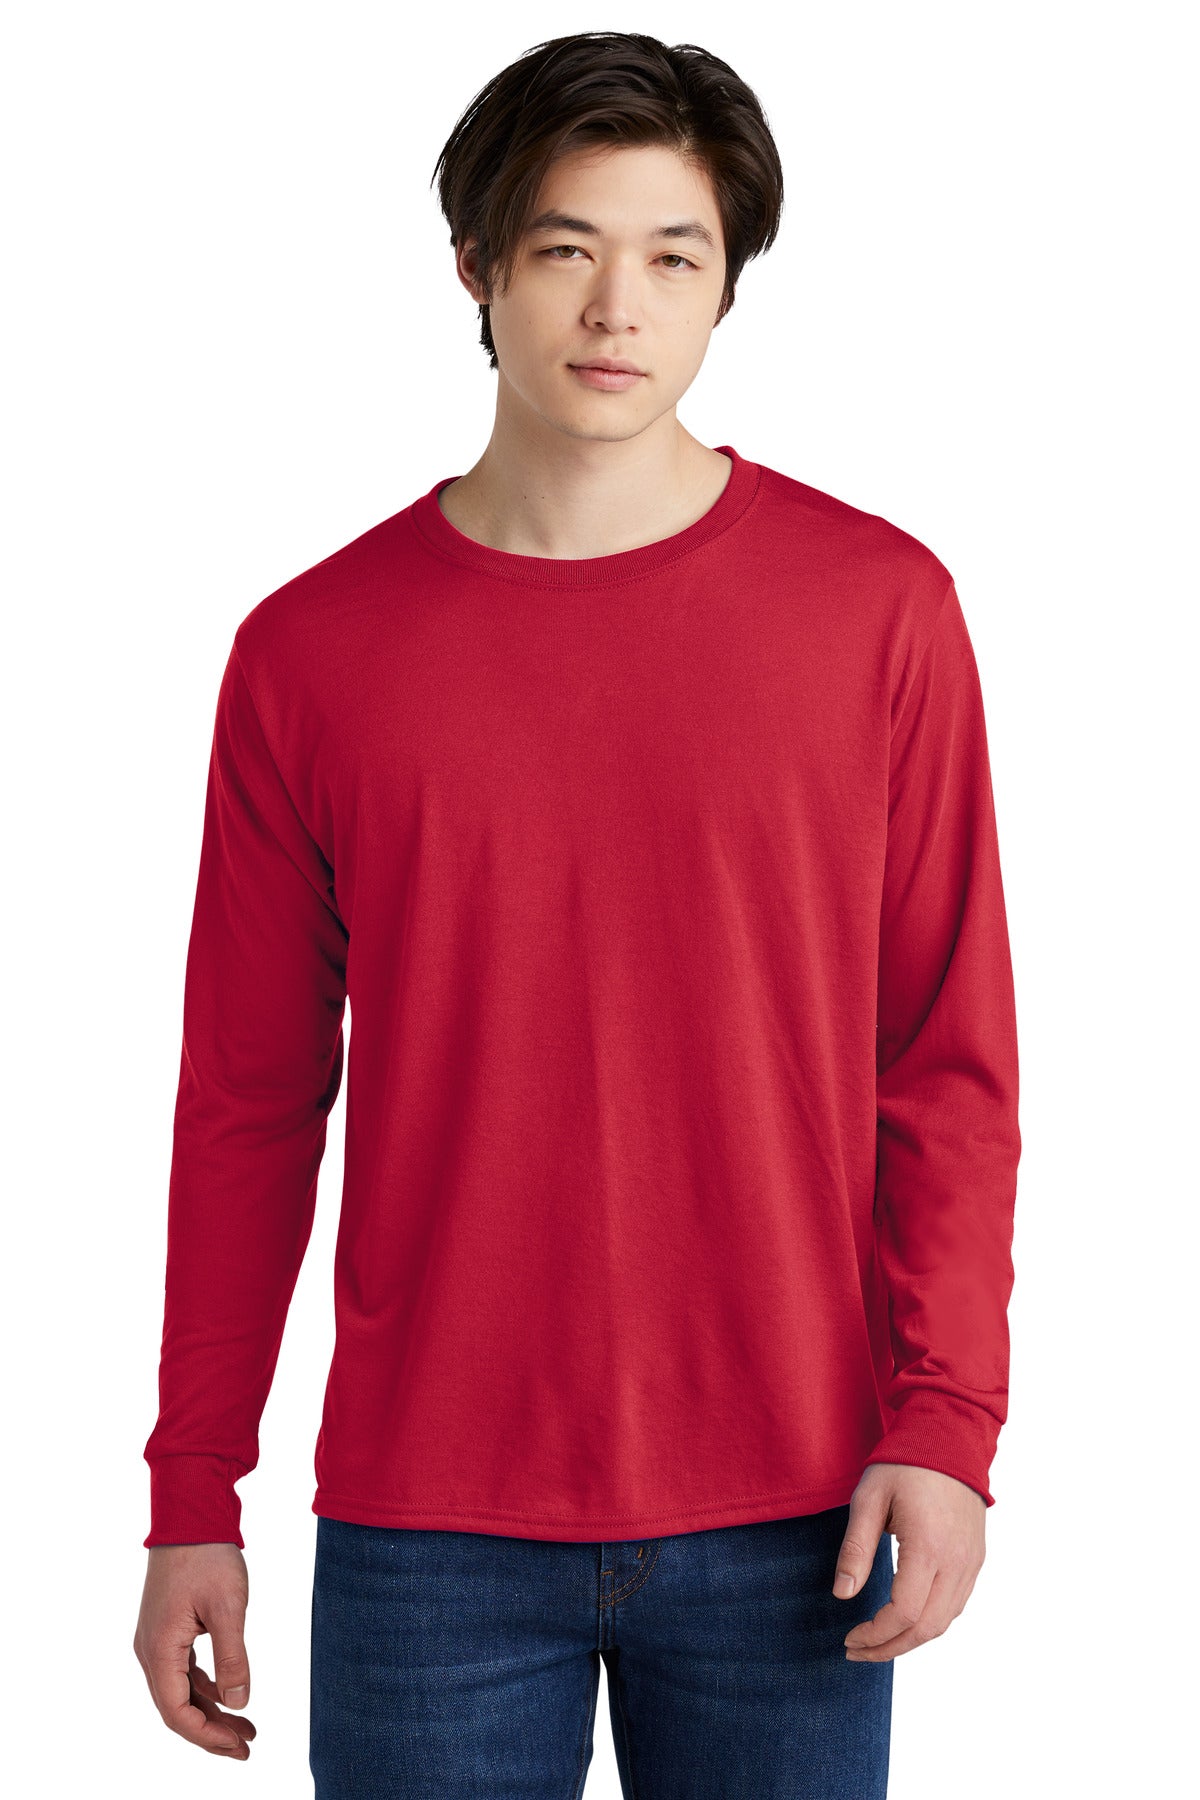 JERZEES® Dri-Power® 100% Polyester Long Sleeve T-Shirt 21LS